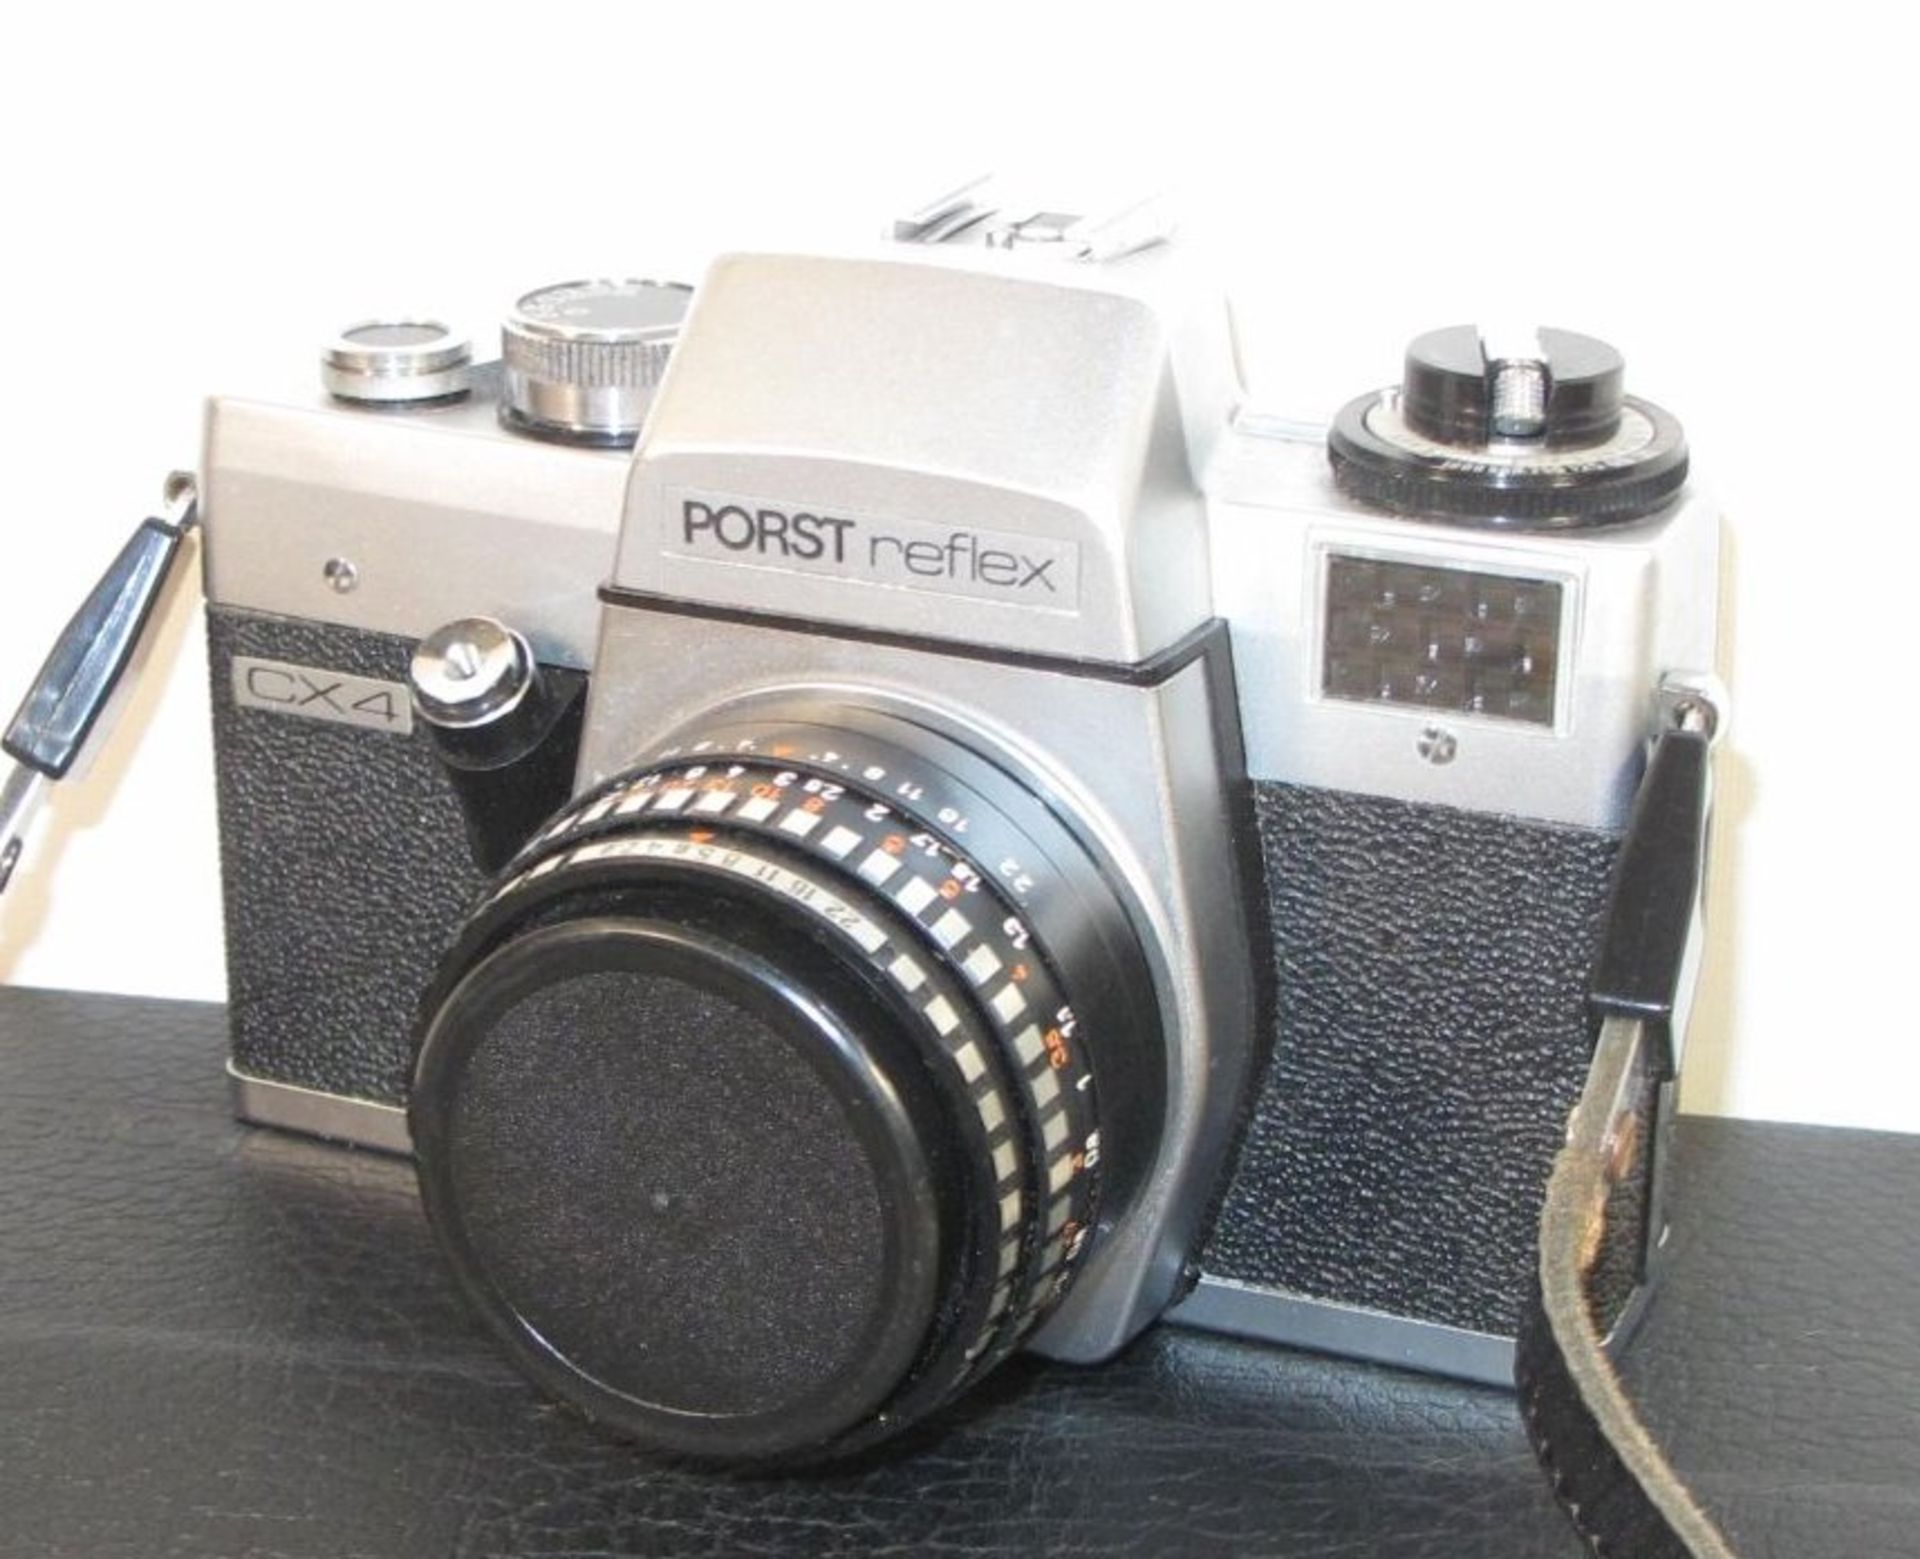 Fotoapparat "Porst Reflex CX 4" anbei 2 Objektive und Blitz, in Tasche. Funktion nicht geprüf - Bild 2 aus 3